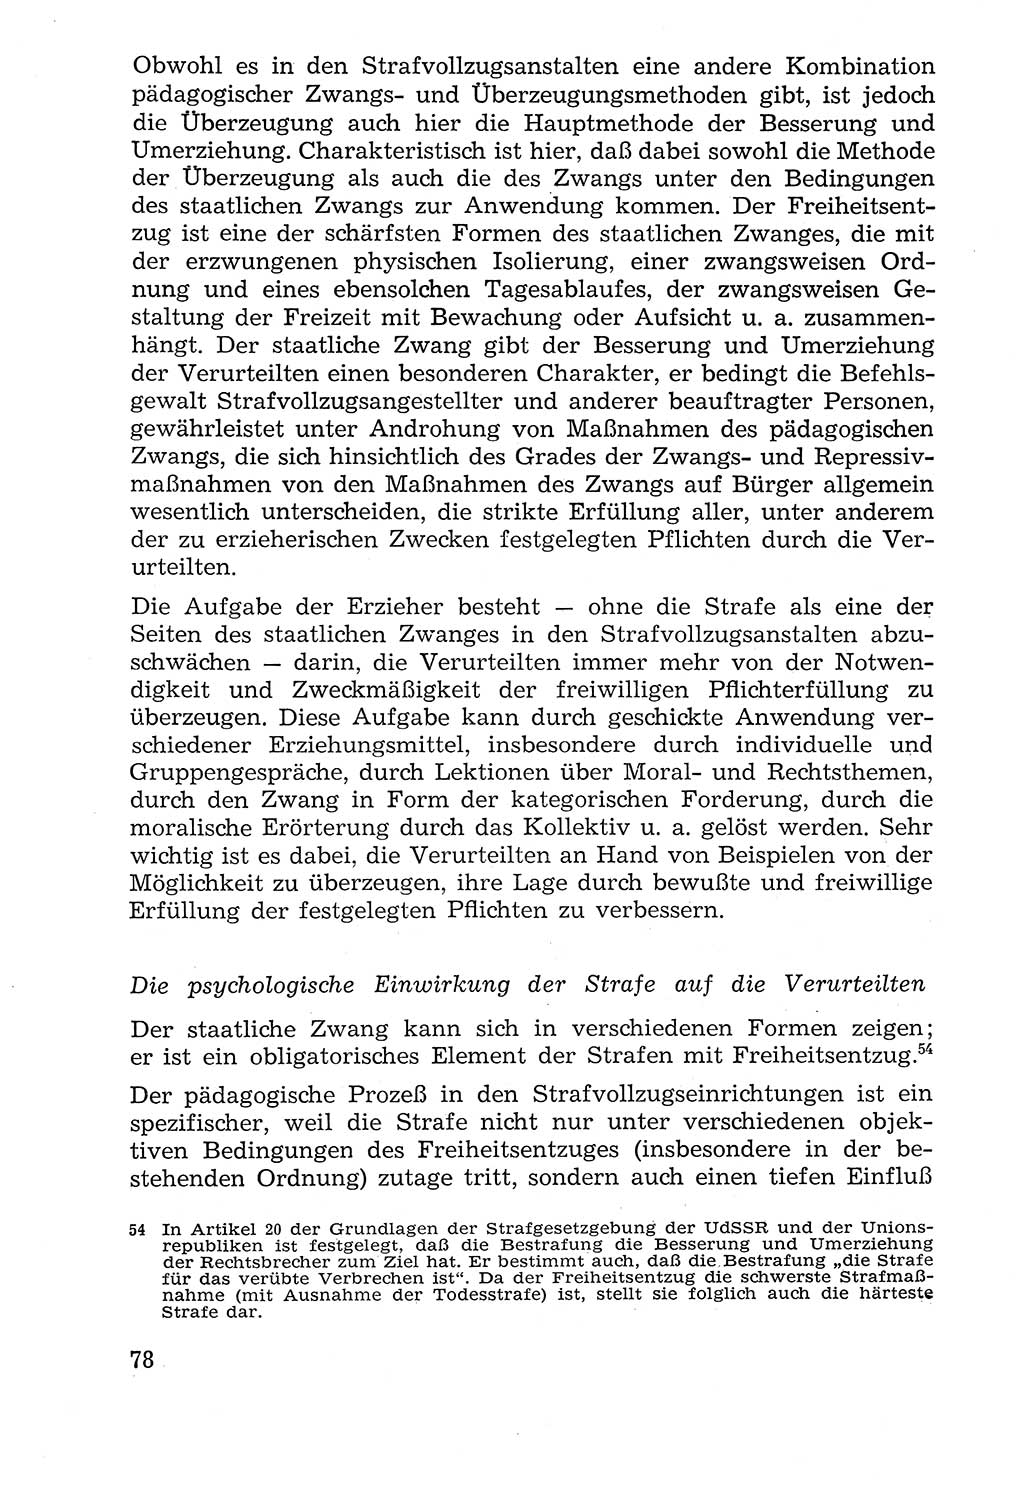 Lehrbuch der Strafvollzugspädagogik [Deutsche Demokratische Republik (DDR)] 1969, Seite 78 (Lb. SV-Pd. DDR 1969, S. 78)